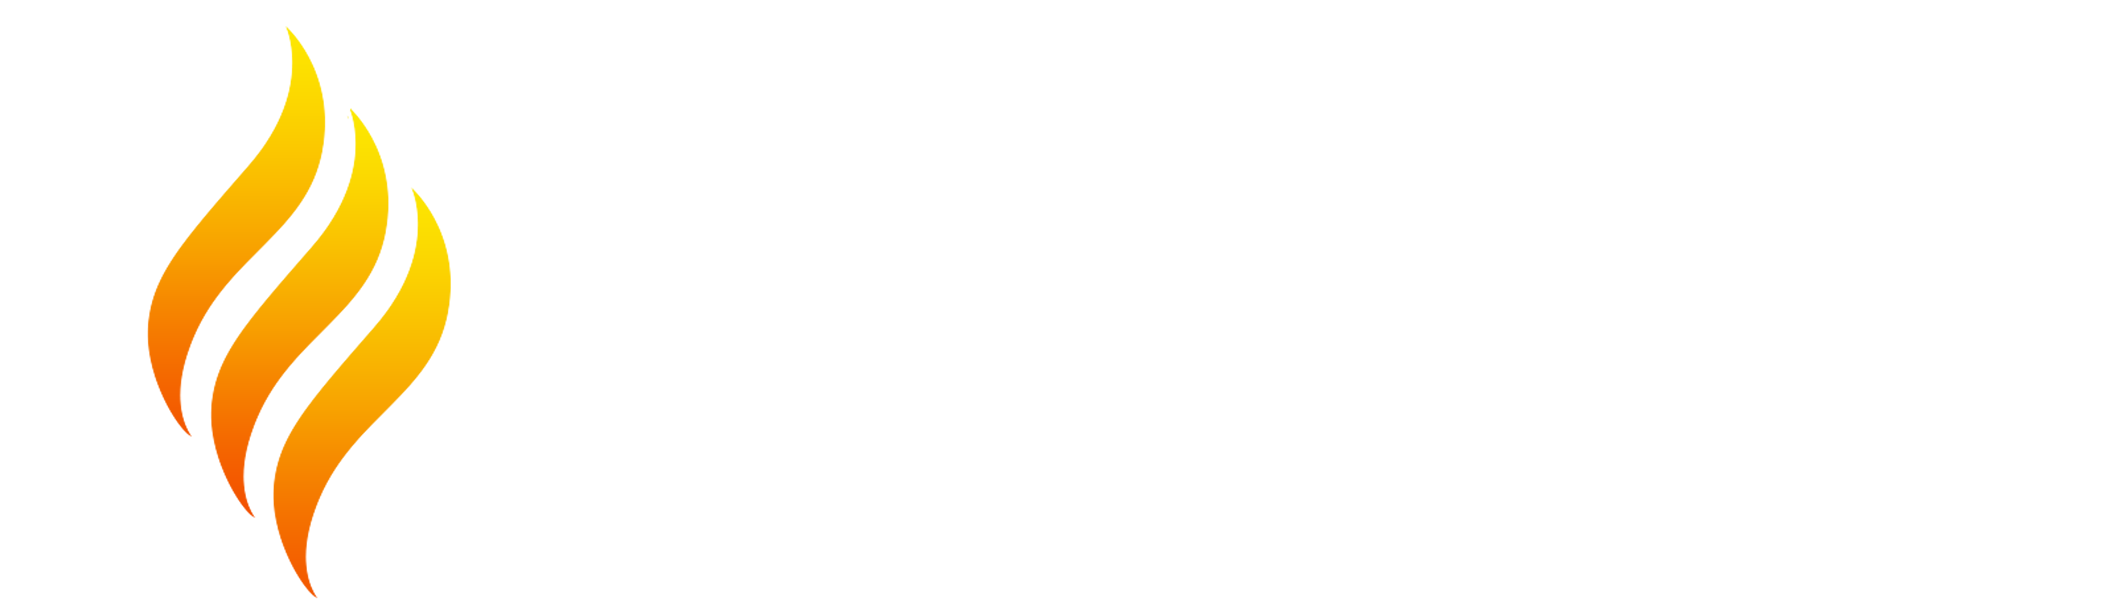 ember_logo-1.png